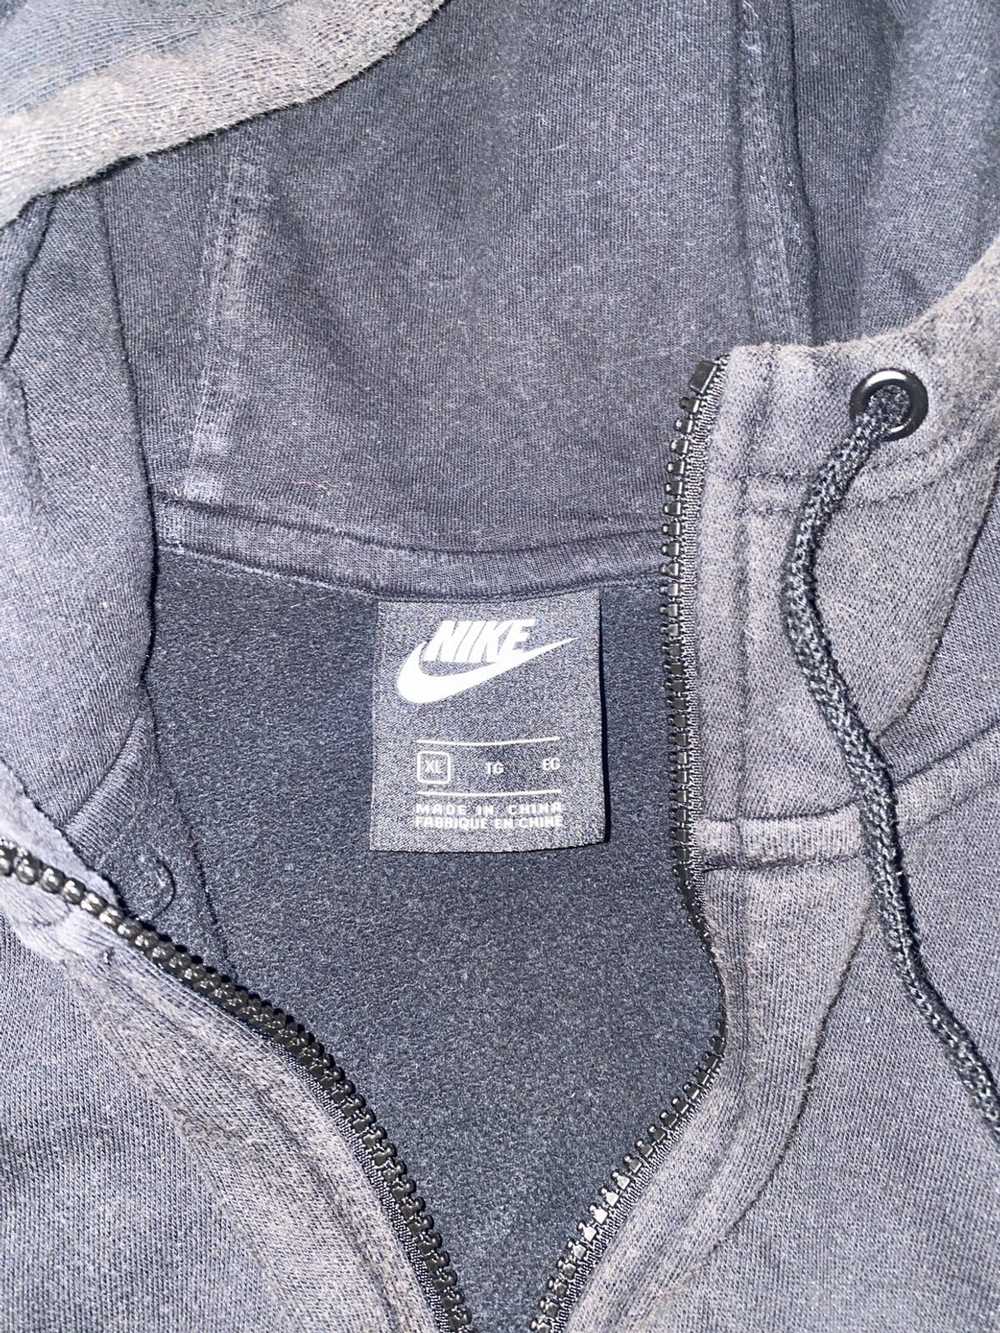 Nike Nike hoodie worn 2 times - image 4